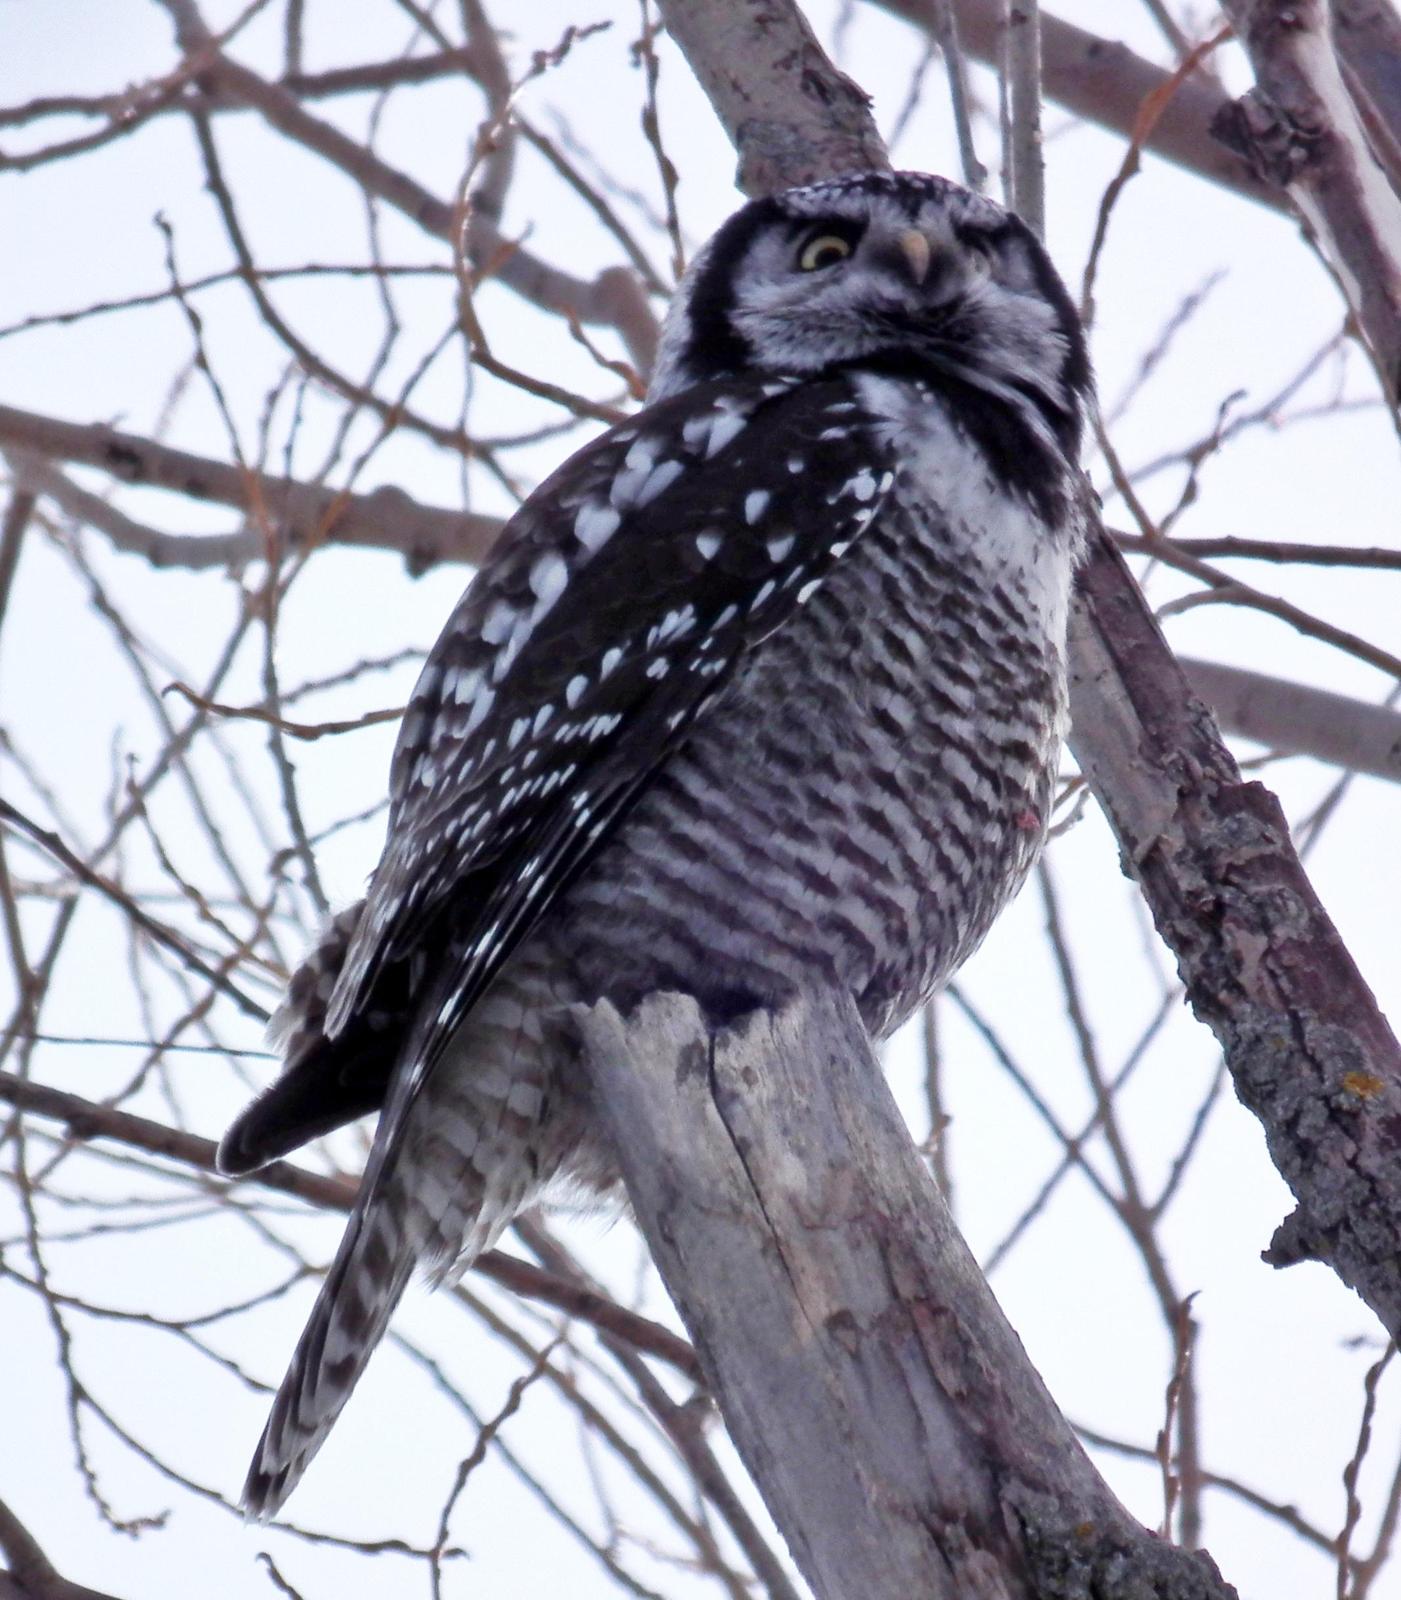 Northern Hawk Owl Photo by Enid Bachman